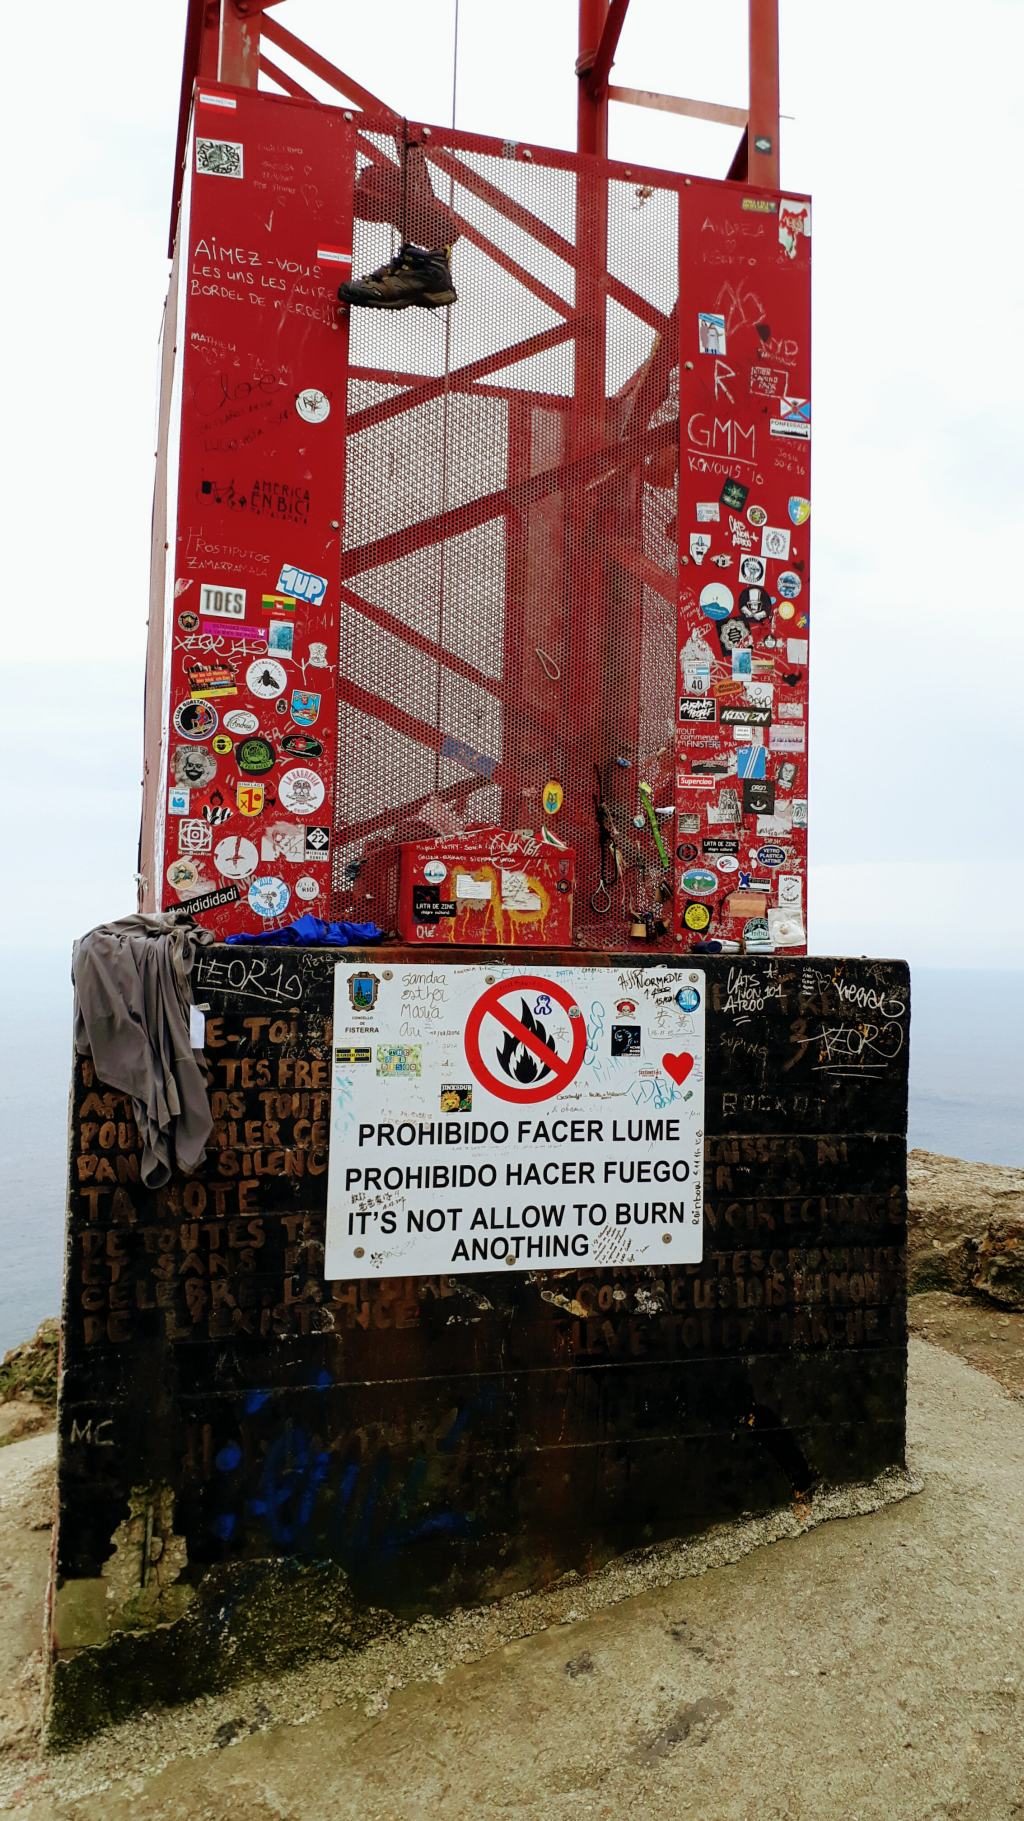 Algunos peregrinos queman sus ropas en el Cabo, pero esto está prohibido